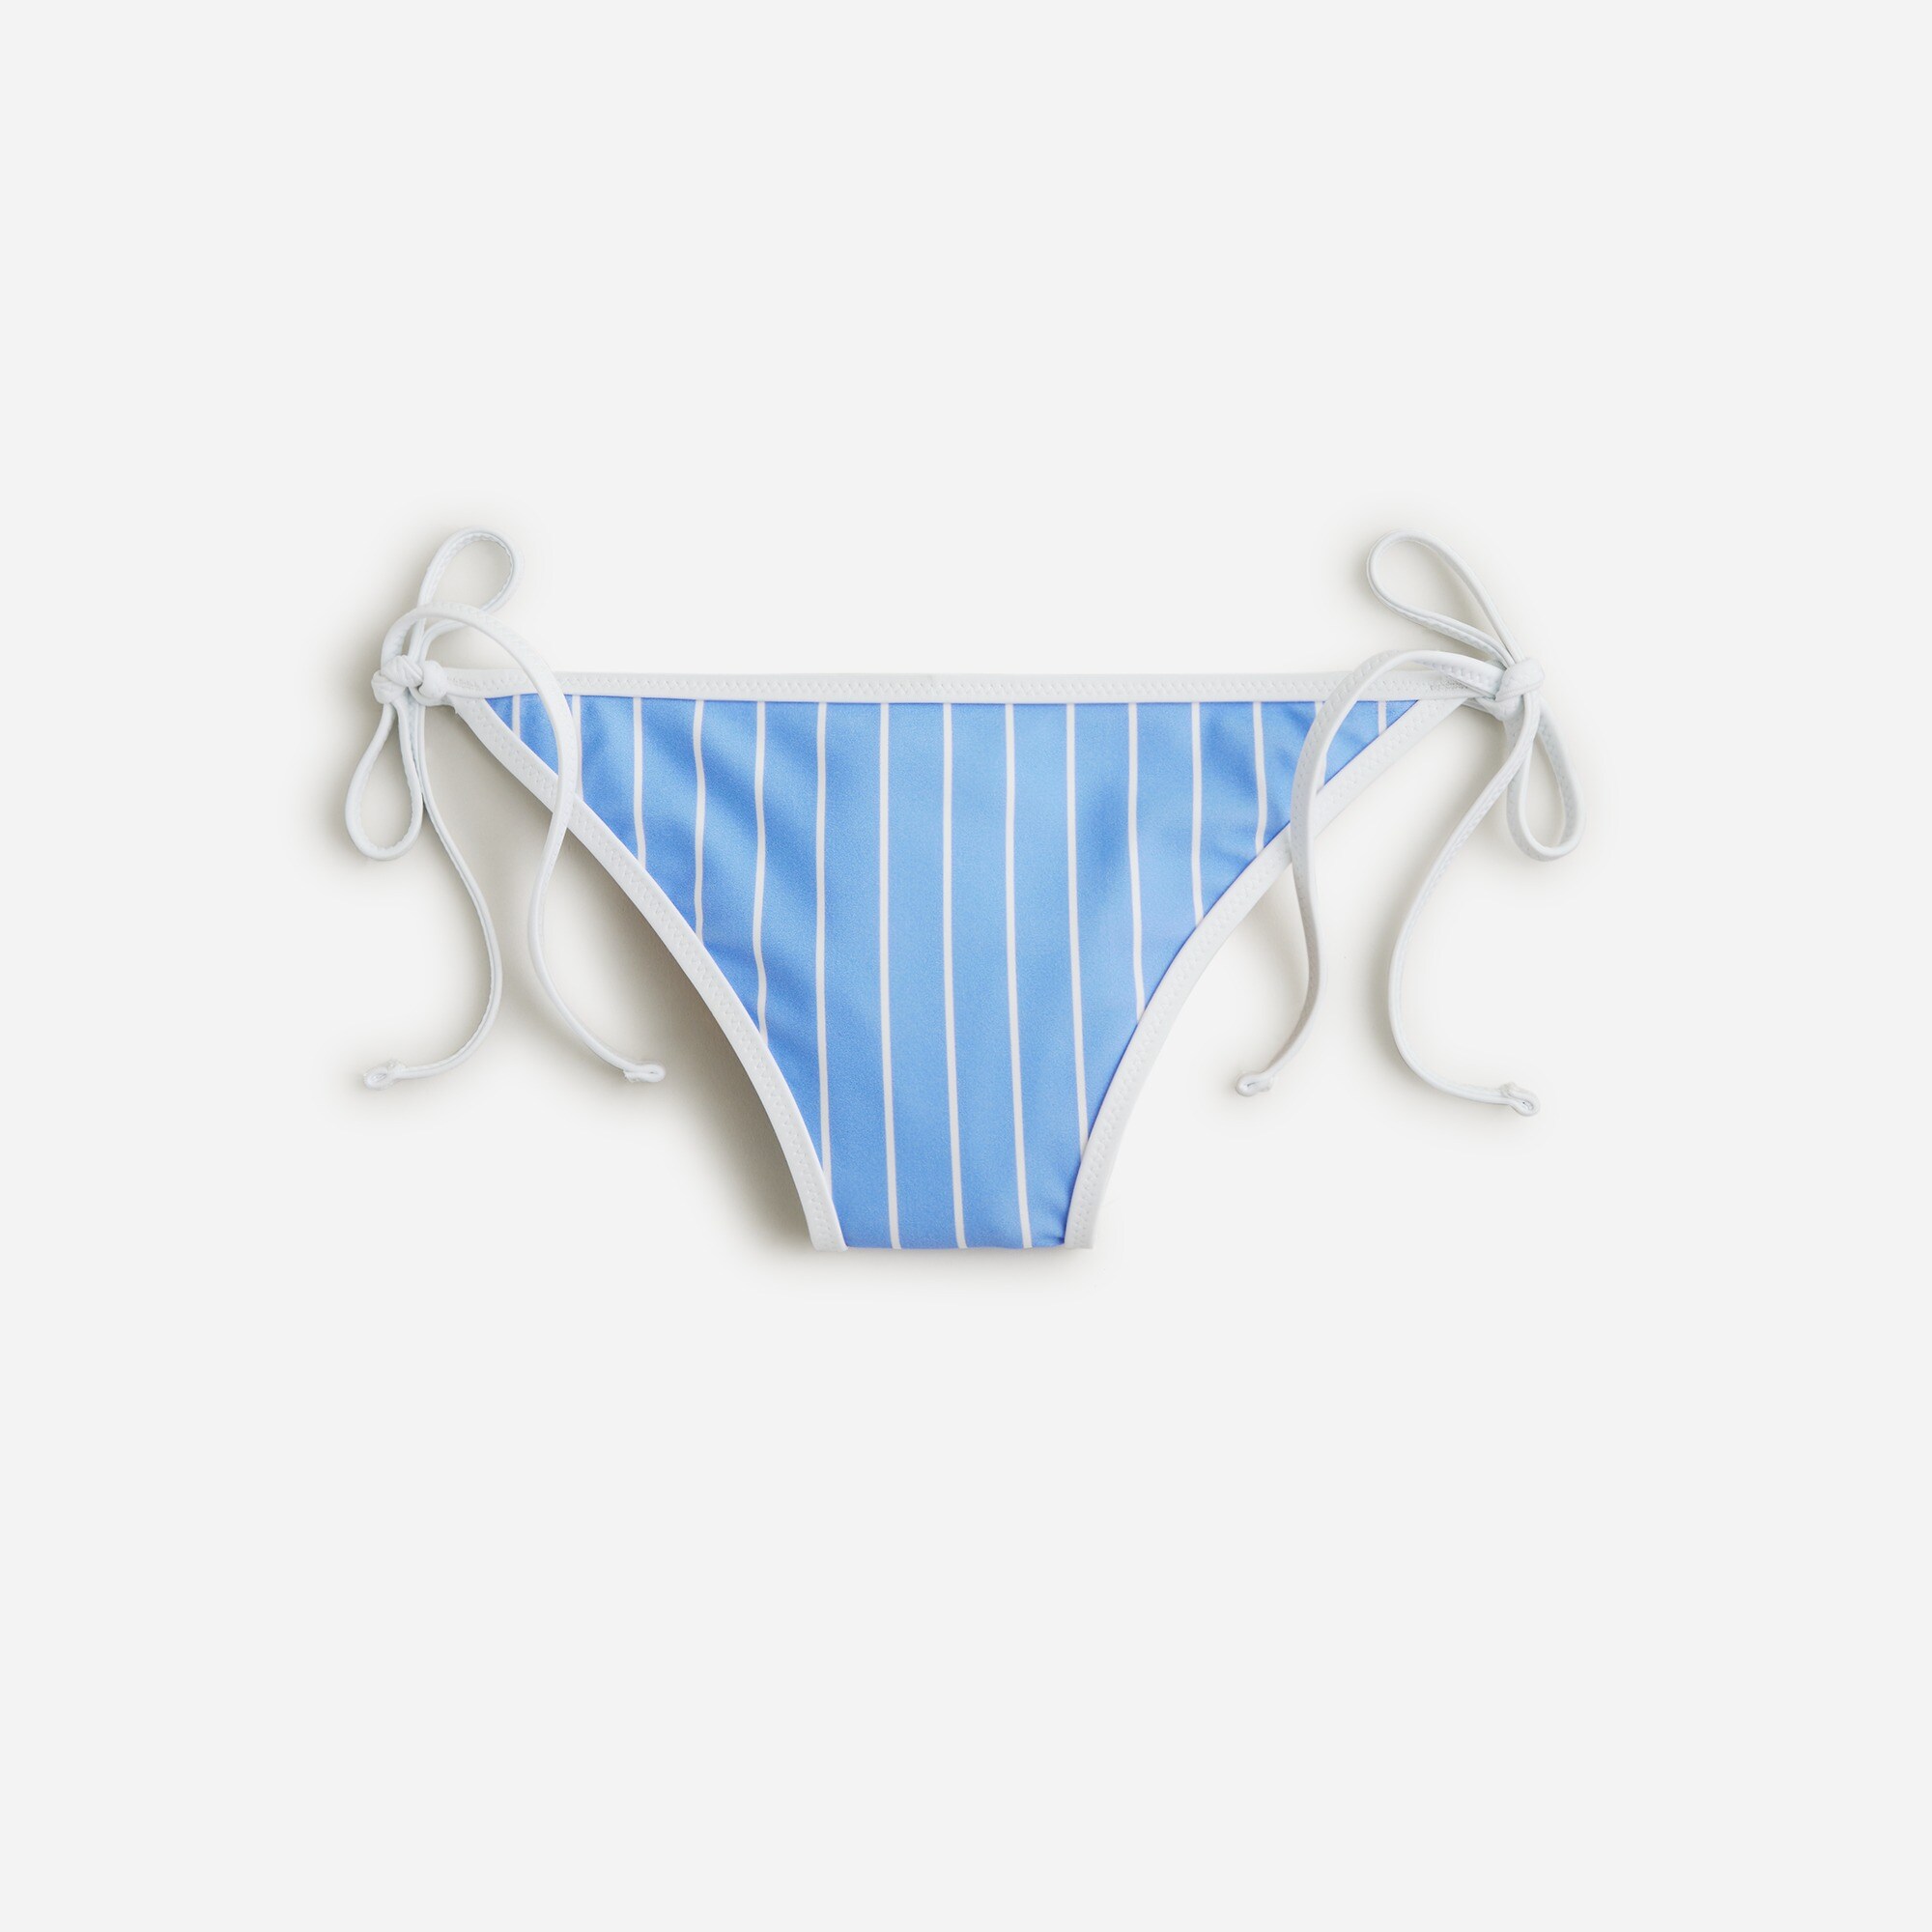  String hipster bikini bottom in stripe